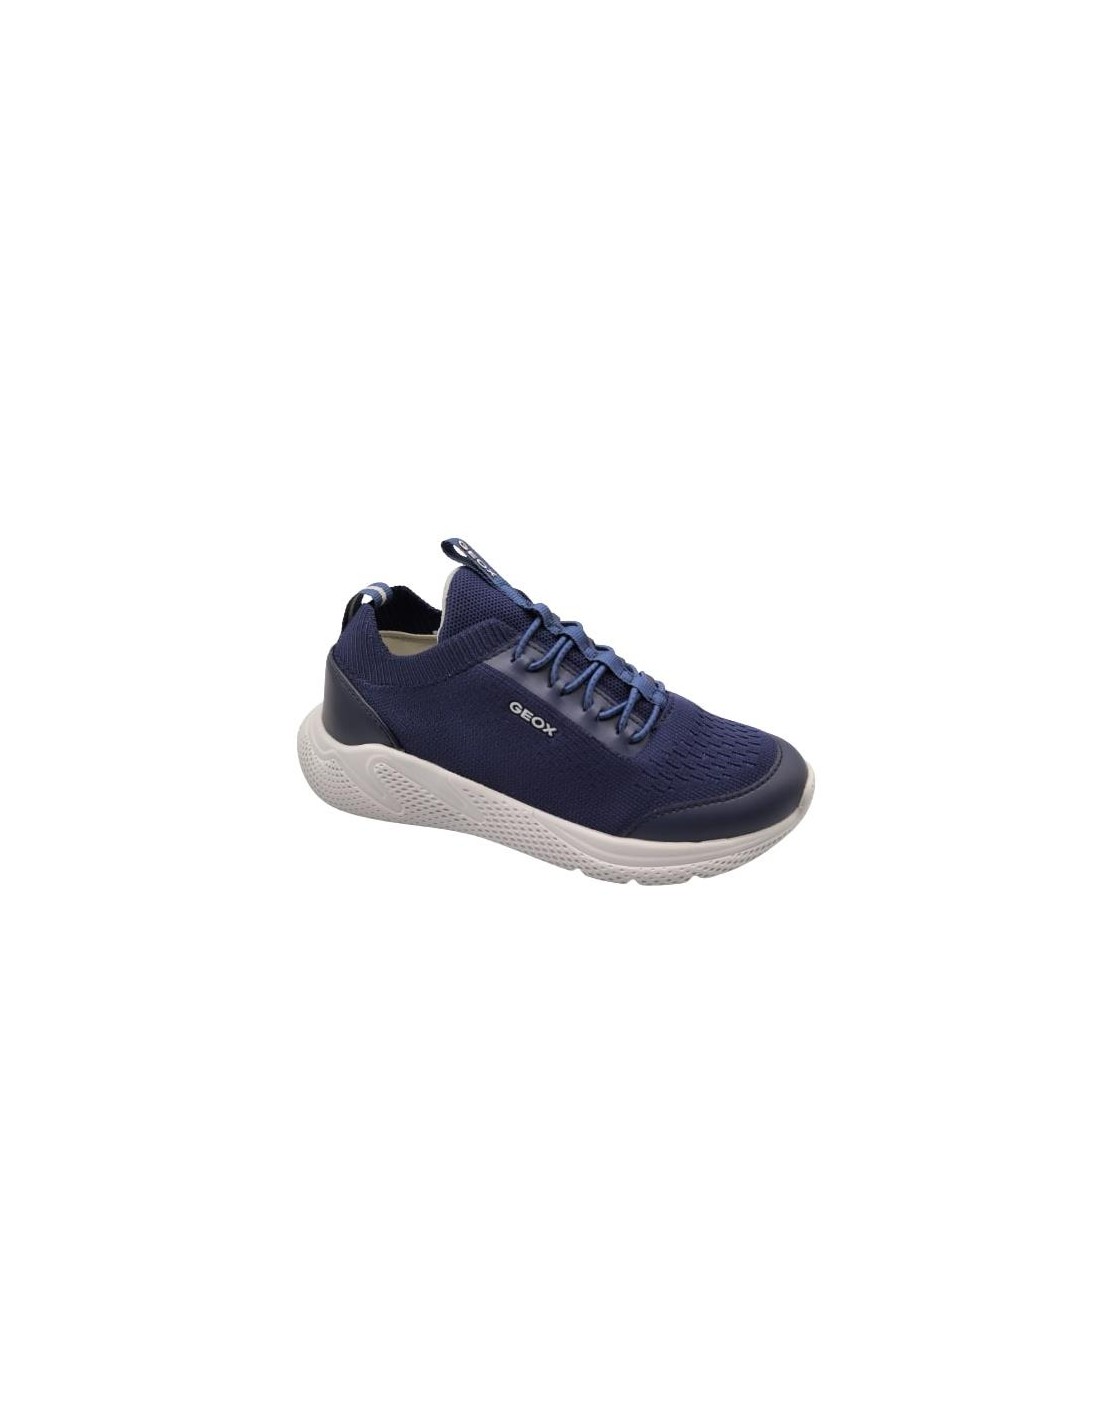 Zapatillas de vestir niños Geox color azul navy. Talla 31 Color NAVY